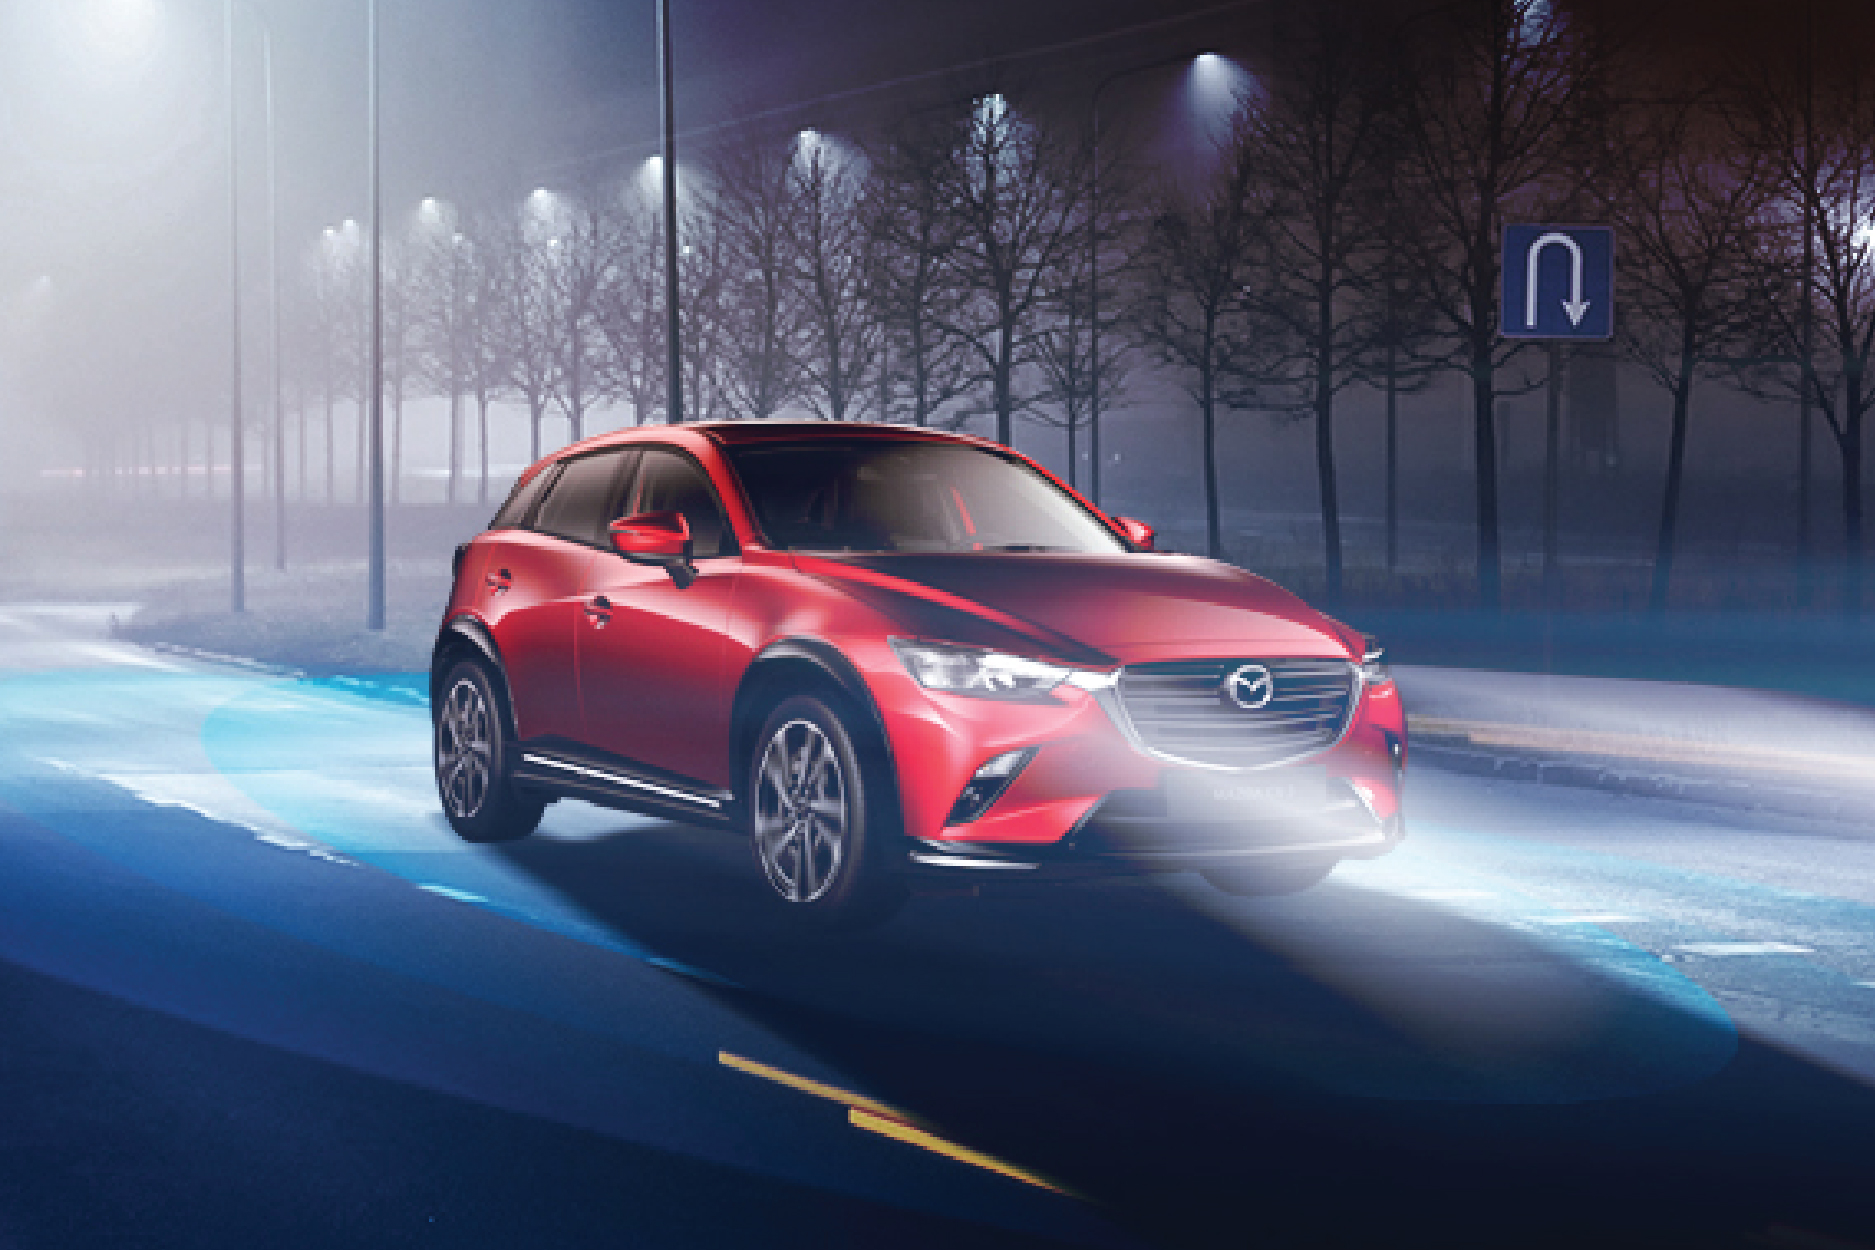 New Mazda CX-3 giải quyết ‘bài toán’ chọn SUV đô thị tiện nghi, an toàn - Ảnh 2.